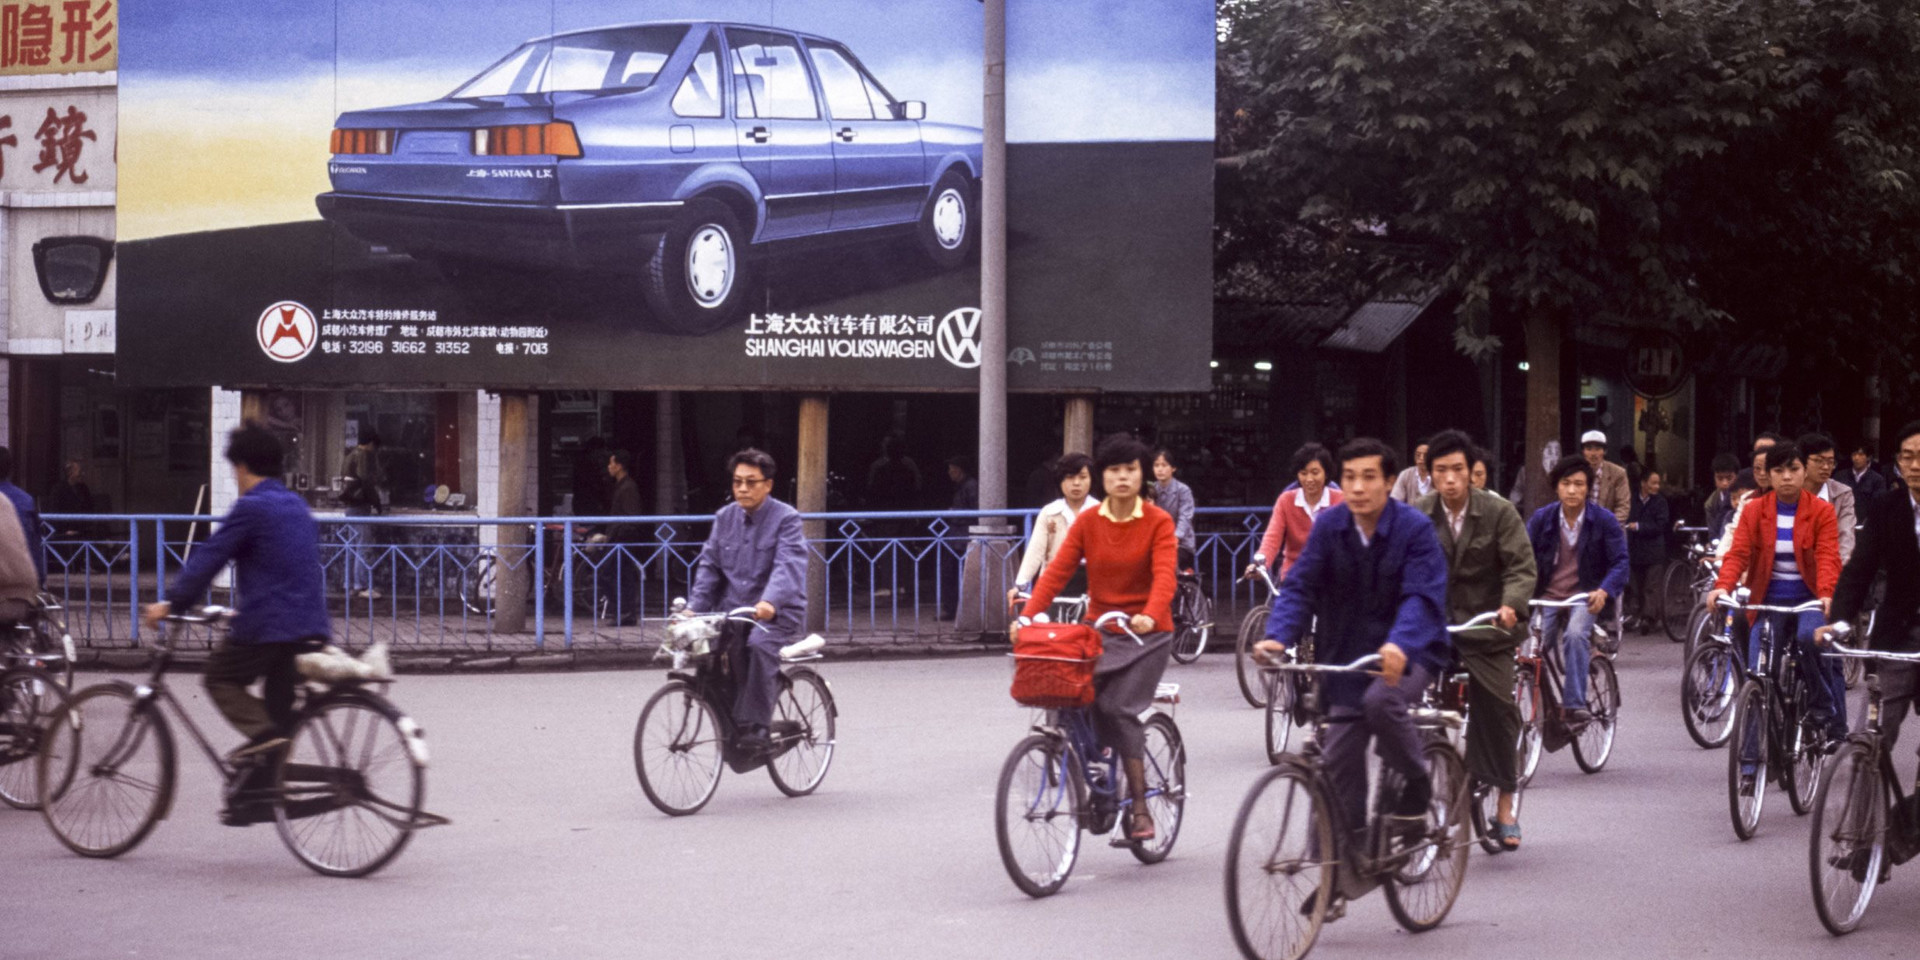 ‘Sở hữu ô tô rất quan trọng, văn hóa xe cộ của chúng tôi khác Mỹ‘ - Người Trung Quốc nhận định- Ảnh 2.